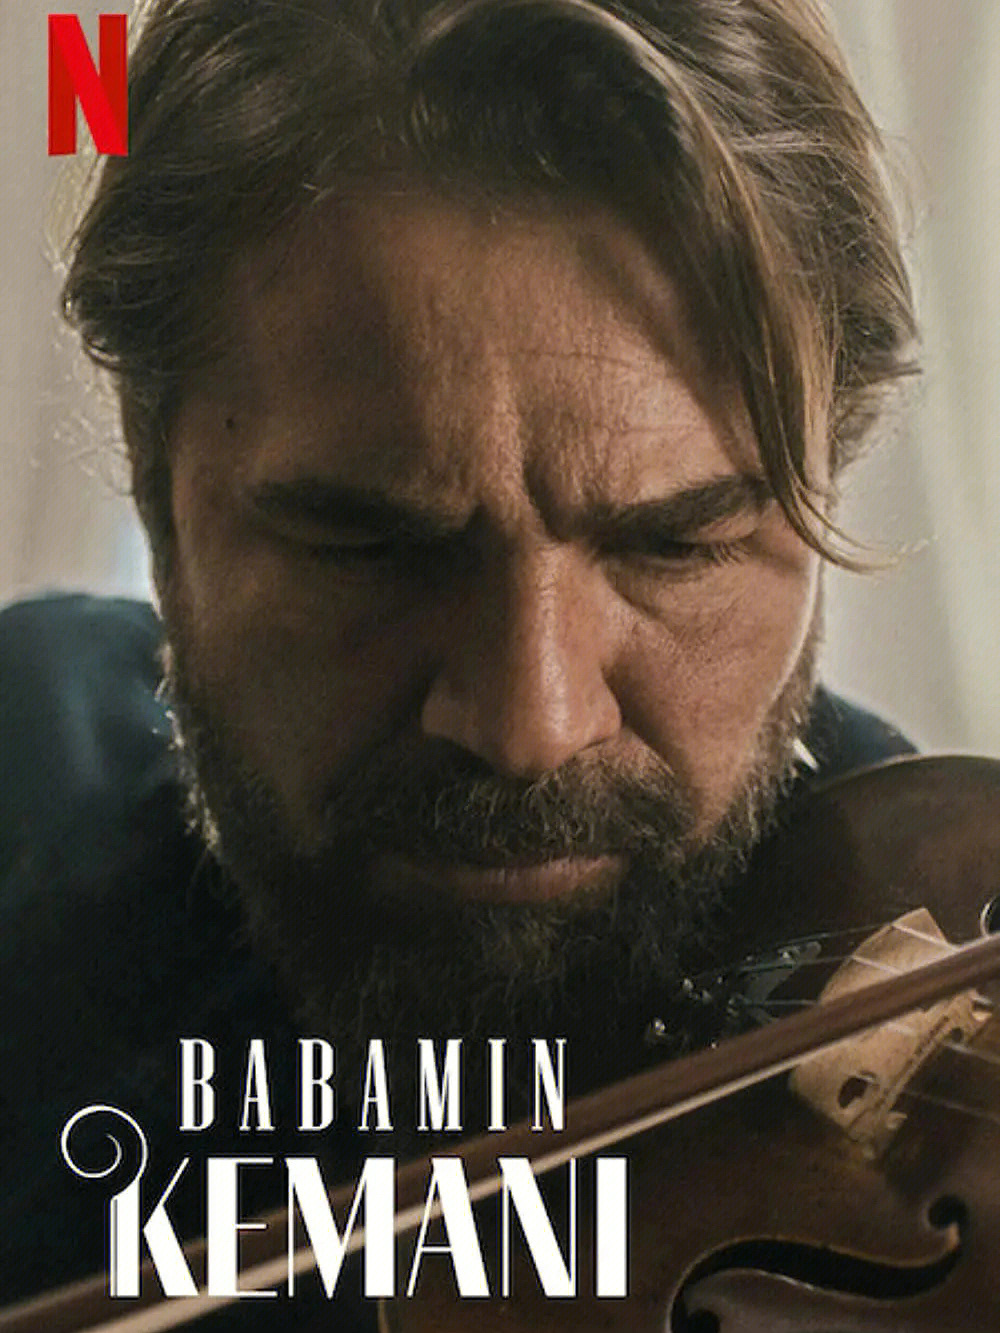 《爸爸的小提琴》是一部土耳其剧情电影,讲述了ozlem的故事,一个八岁